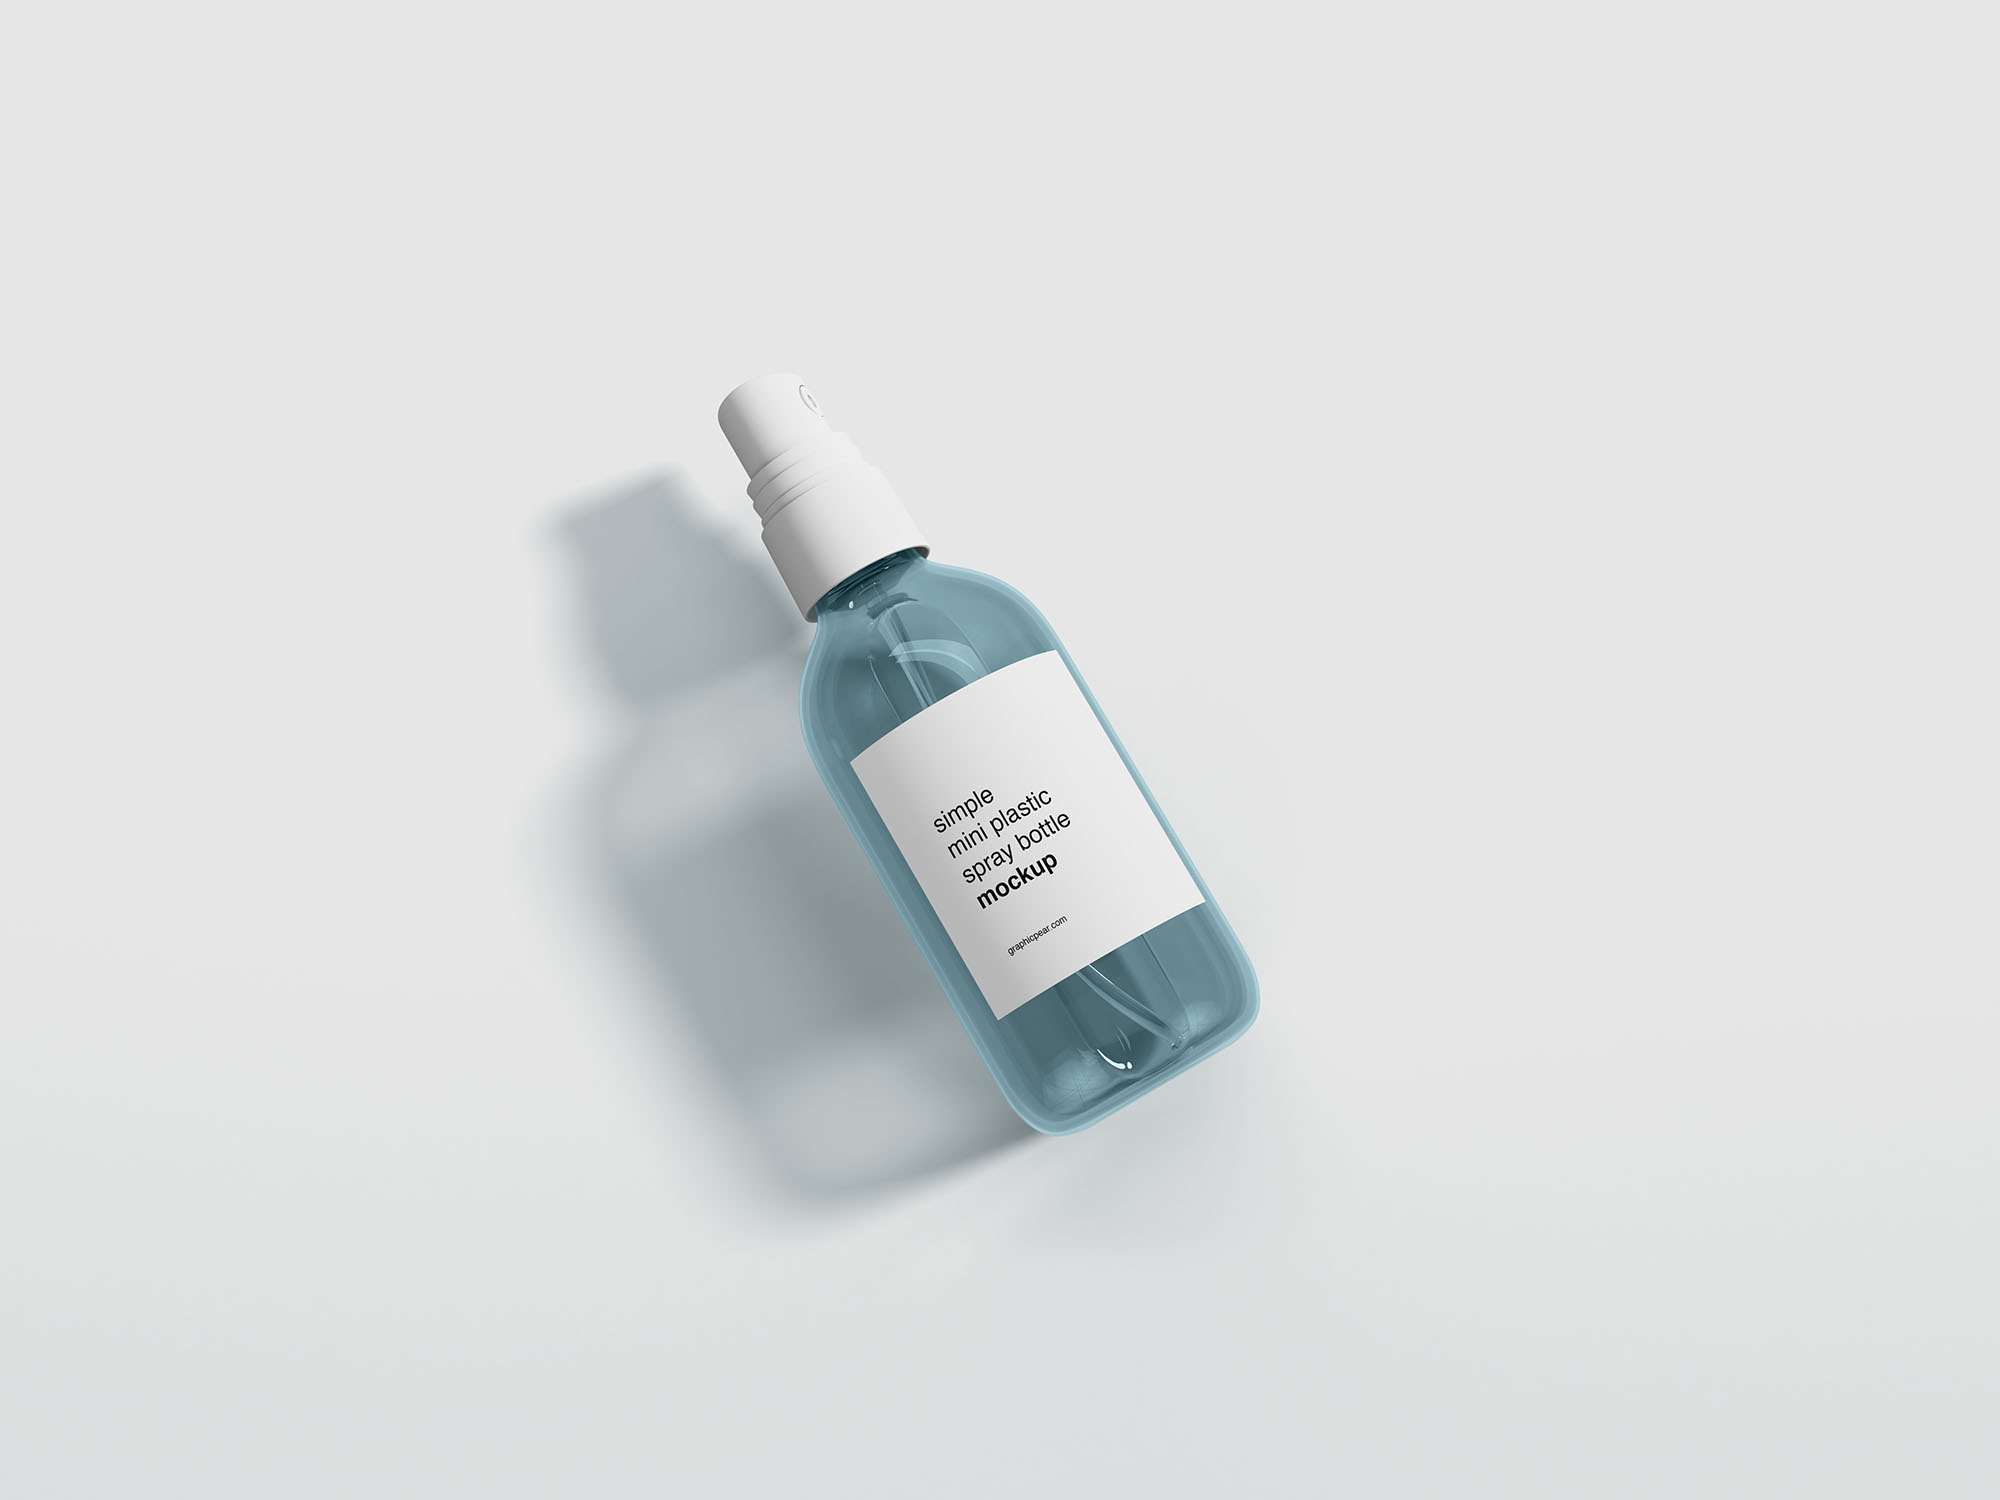 便携小支装喷雾瓶外观设计样机 Mini Spray Bottle Mockup插图